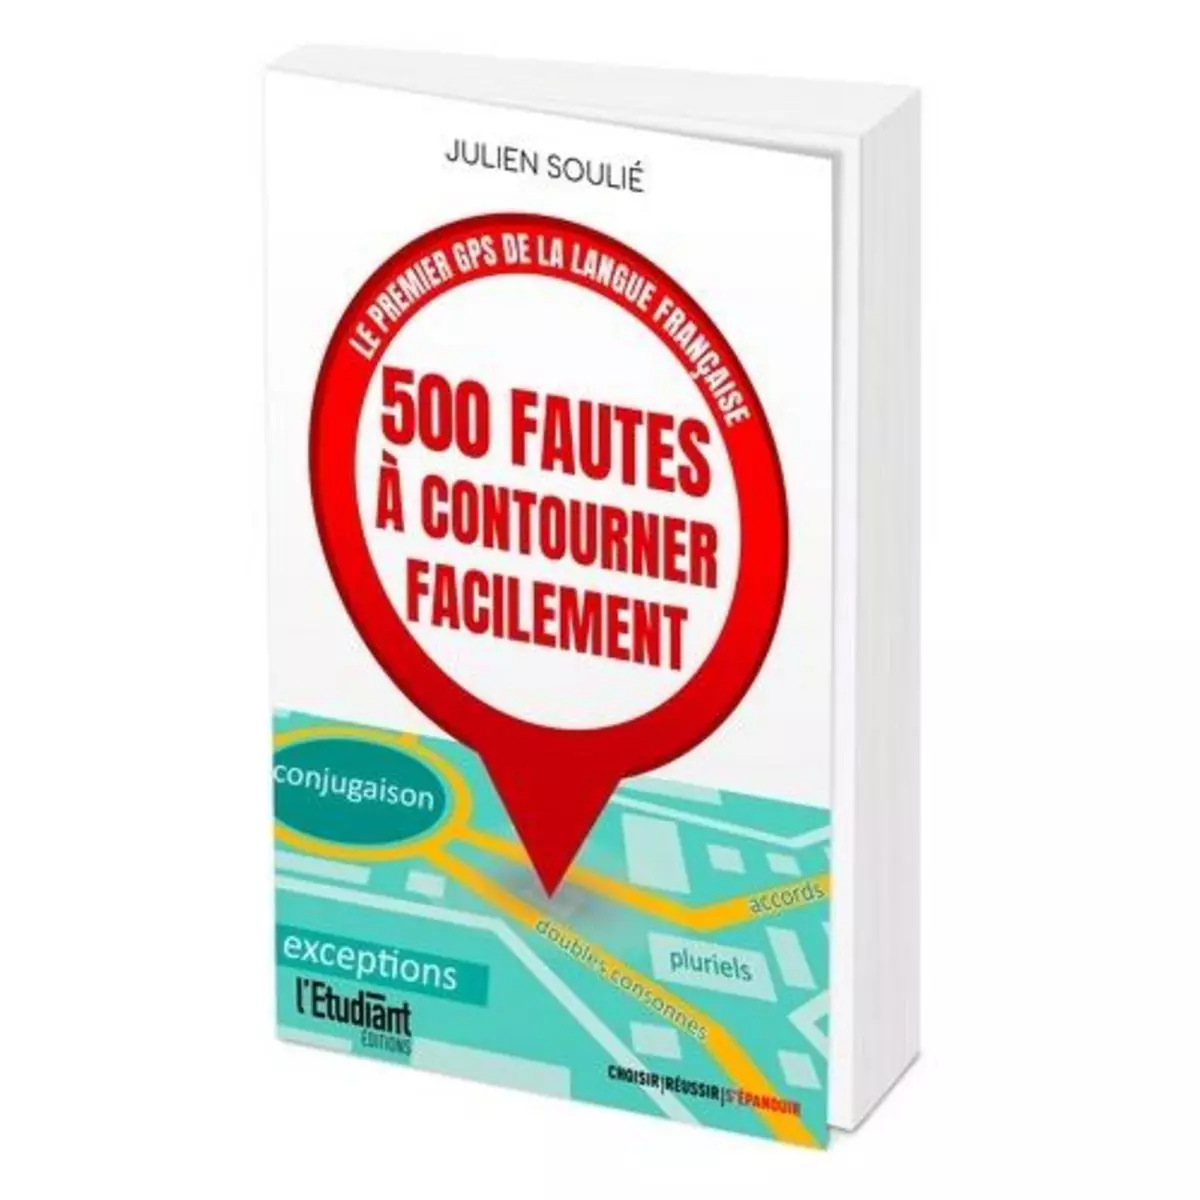  500 FAUTES A CONTOURNER FACILEMENT. LE PREMIER GPS DE LA LANGUE FRANCAISE, Soulié Julien